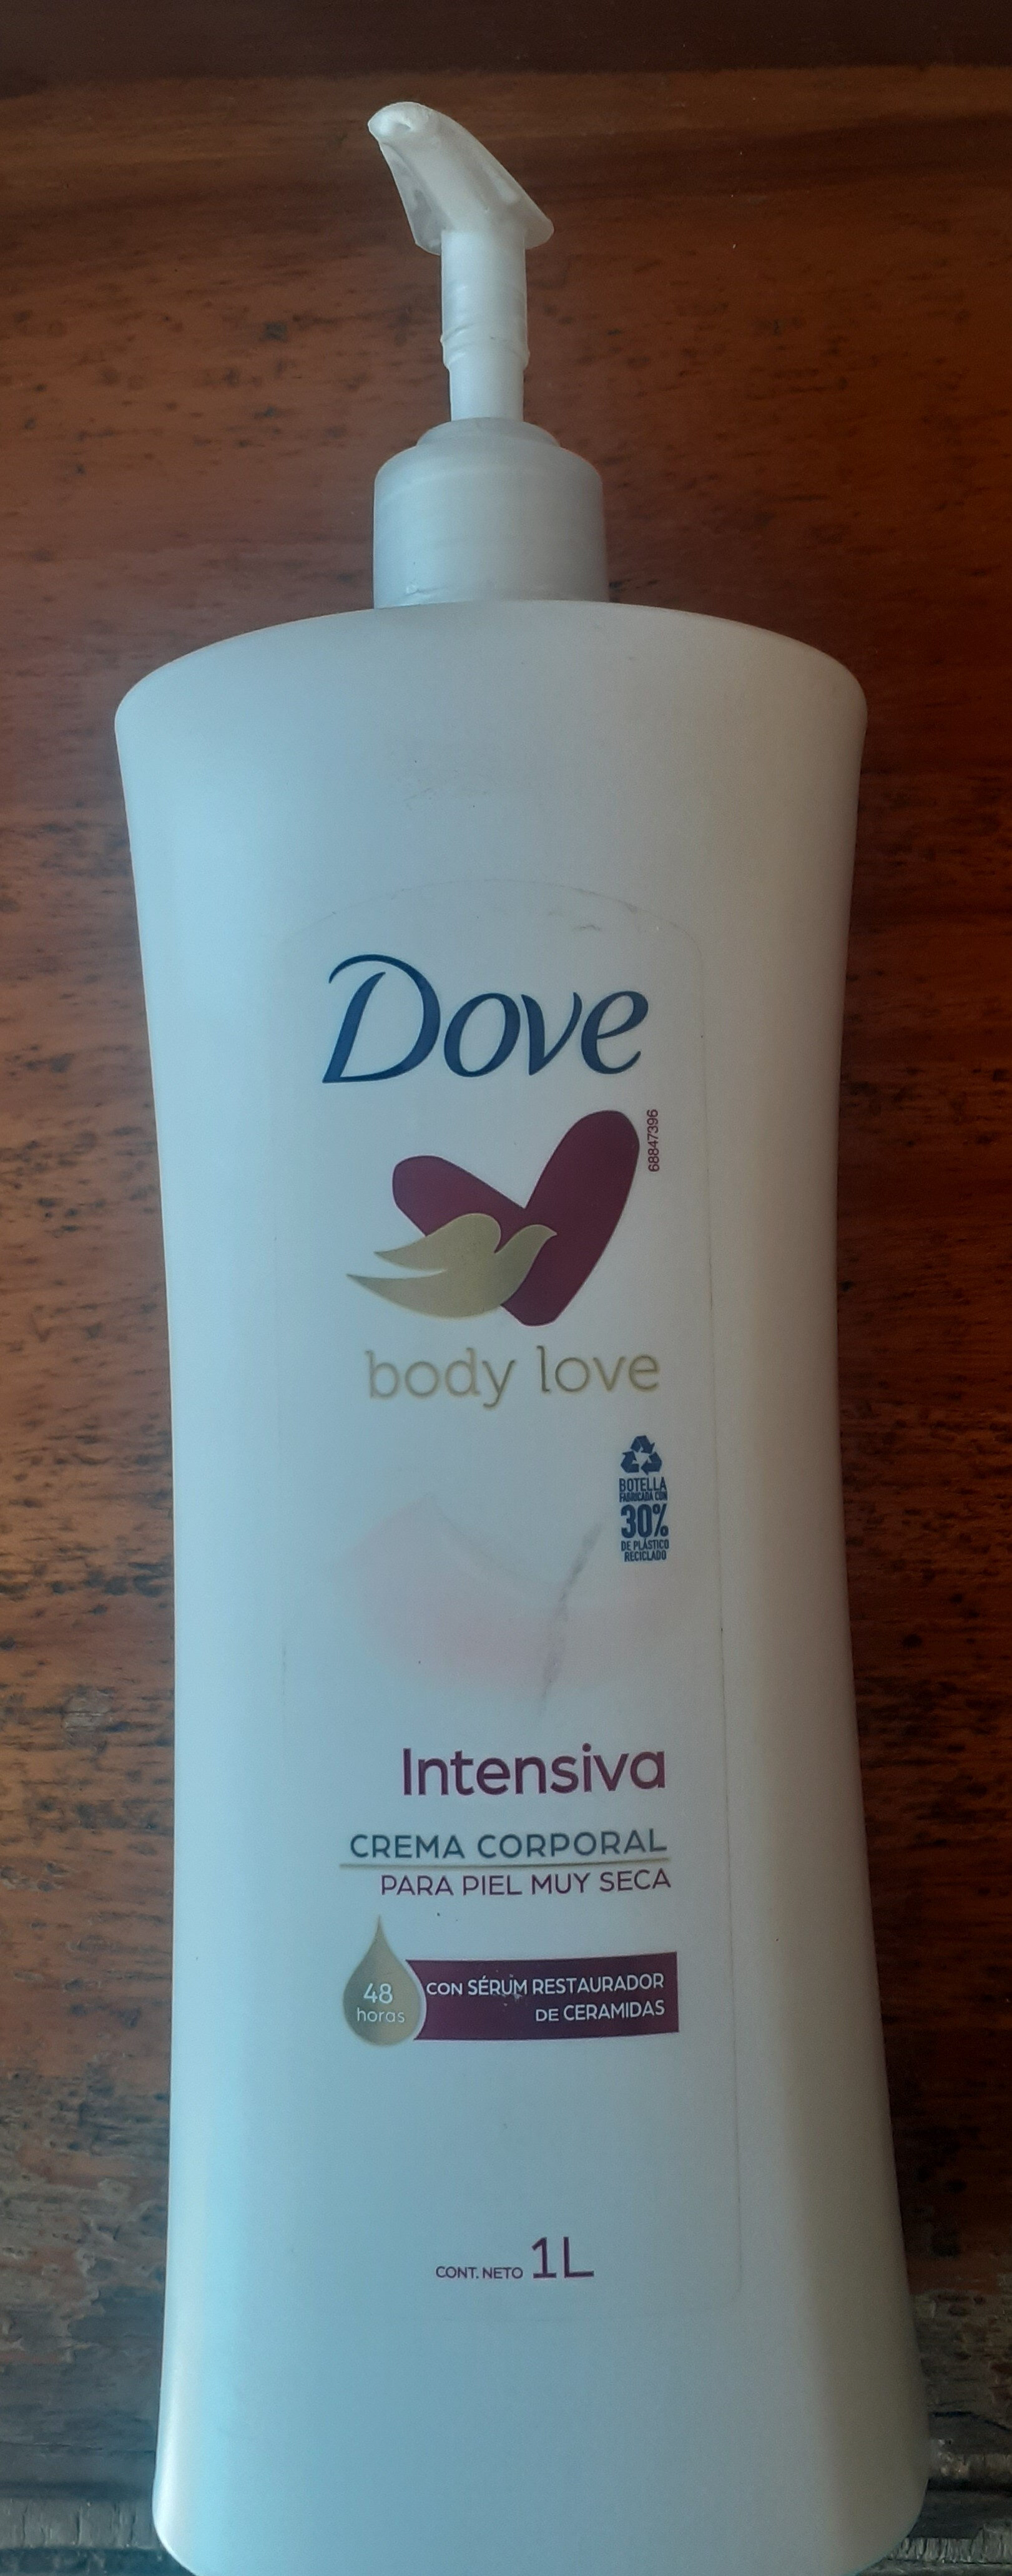 Dove Body Love Intensiva - Produkto - es